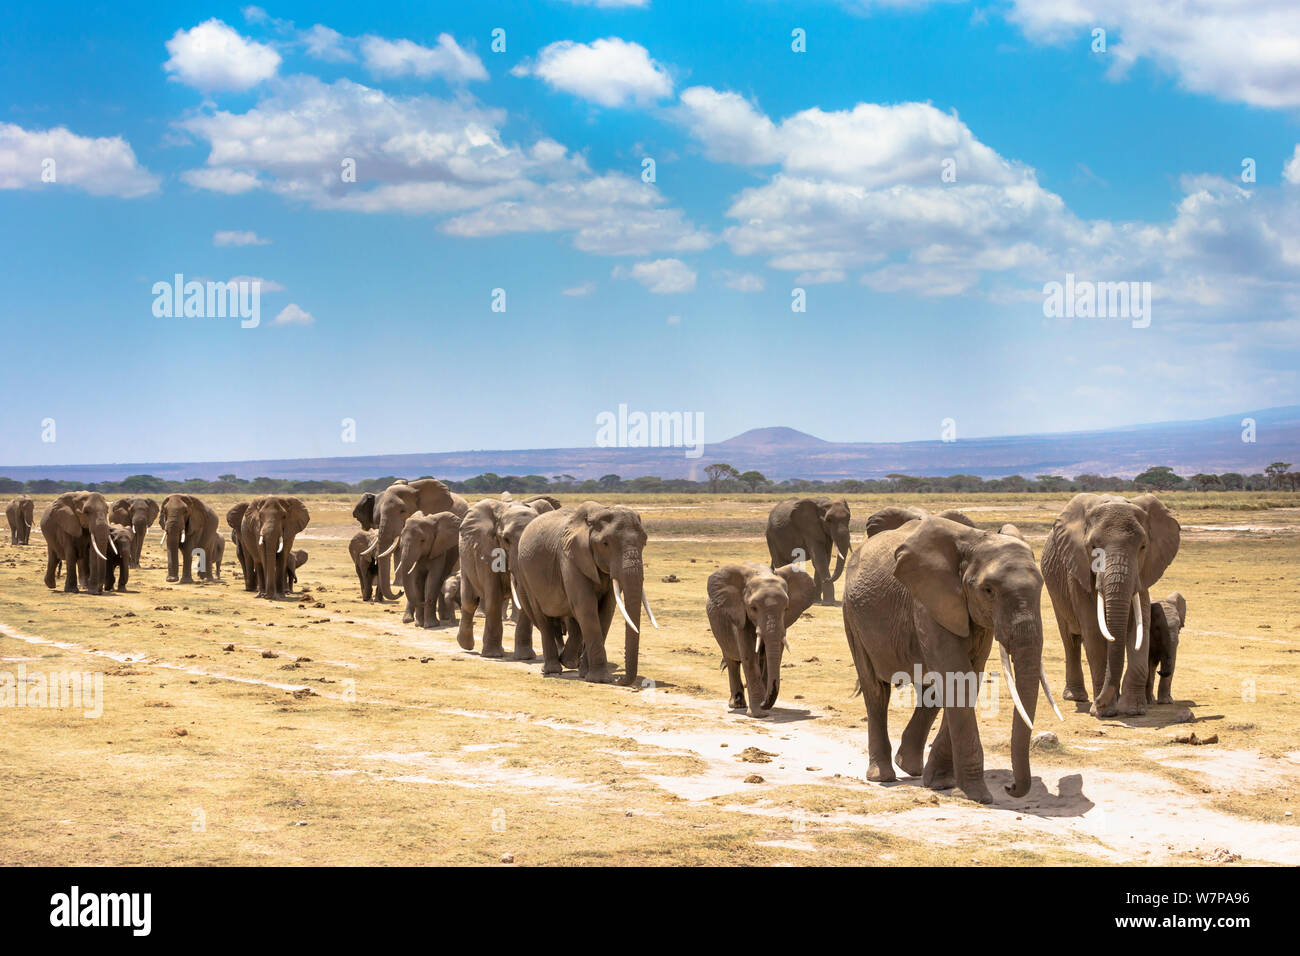 African elephants (Loxodonta africana) large family group on migration, Amboseli National Park, Kenya Stock Photo